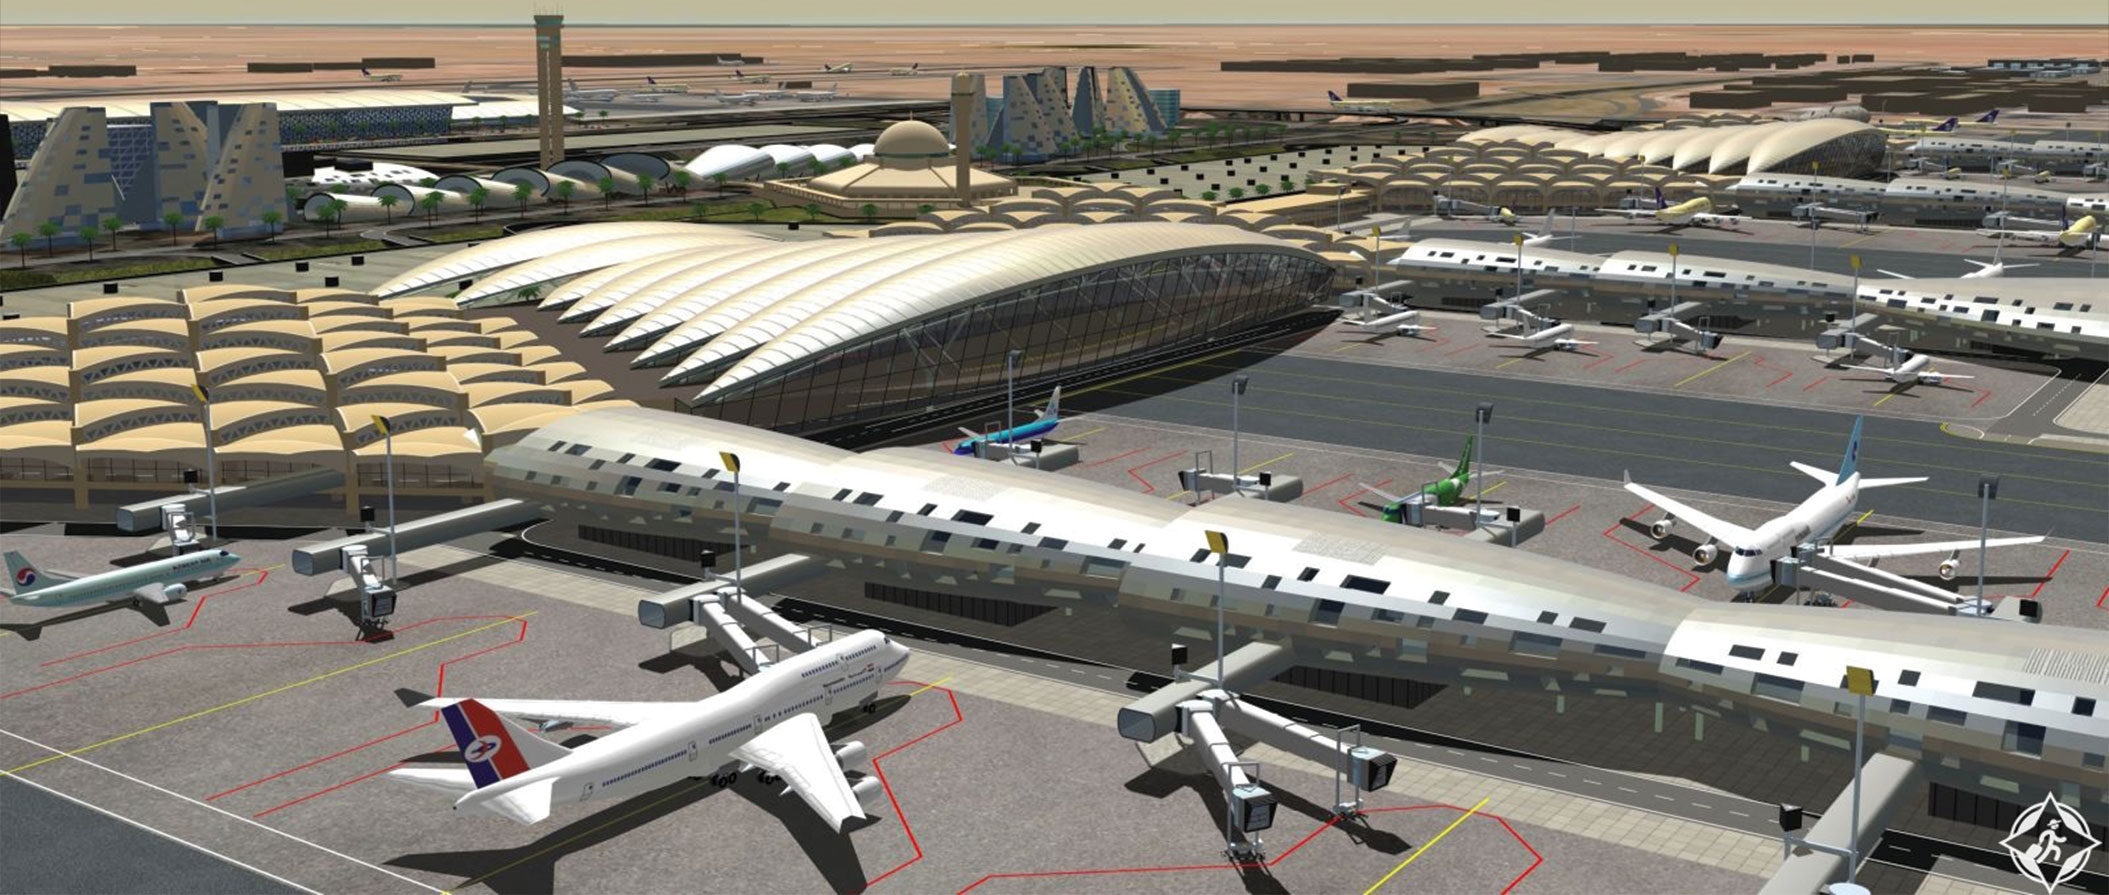 Транспорт саудовской аравии. Международный аэропорт Король Халид. Аэропорт Король Фахд в Саудовской Аравии. Король Халид Саудовская Аравия аэропорт. Аэропорт Саудовской Аравии Международный.